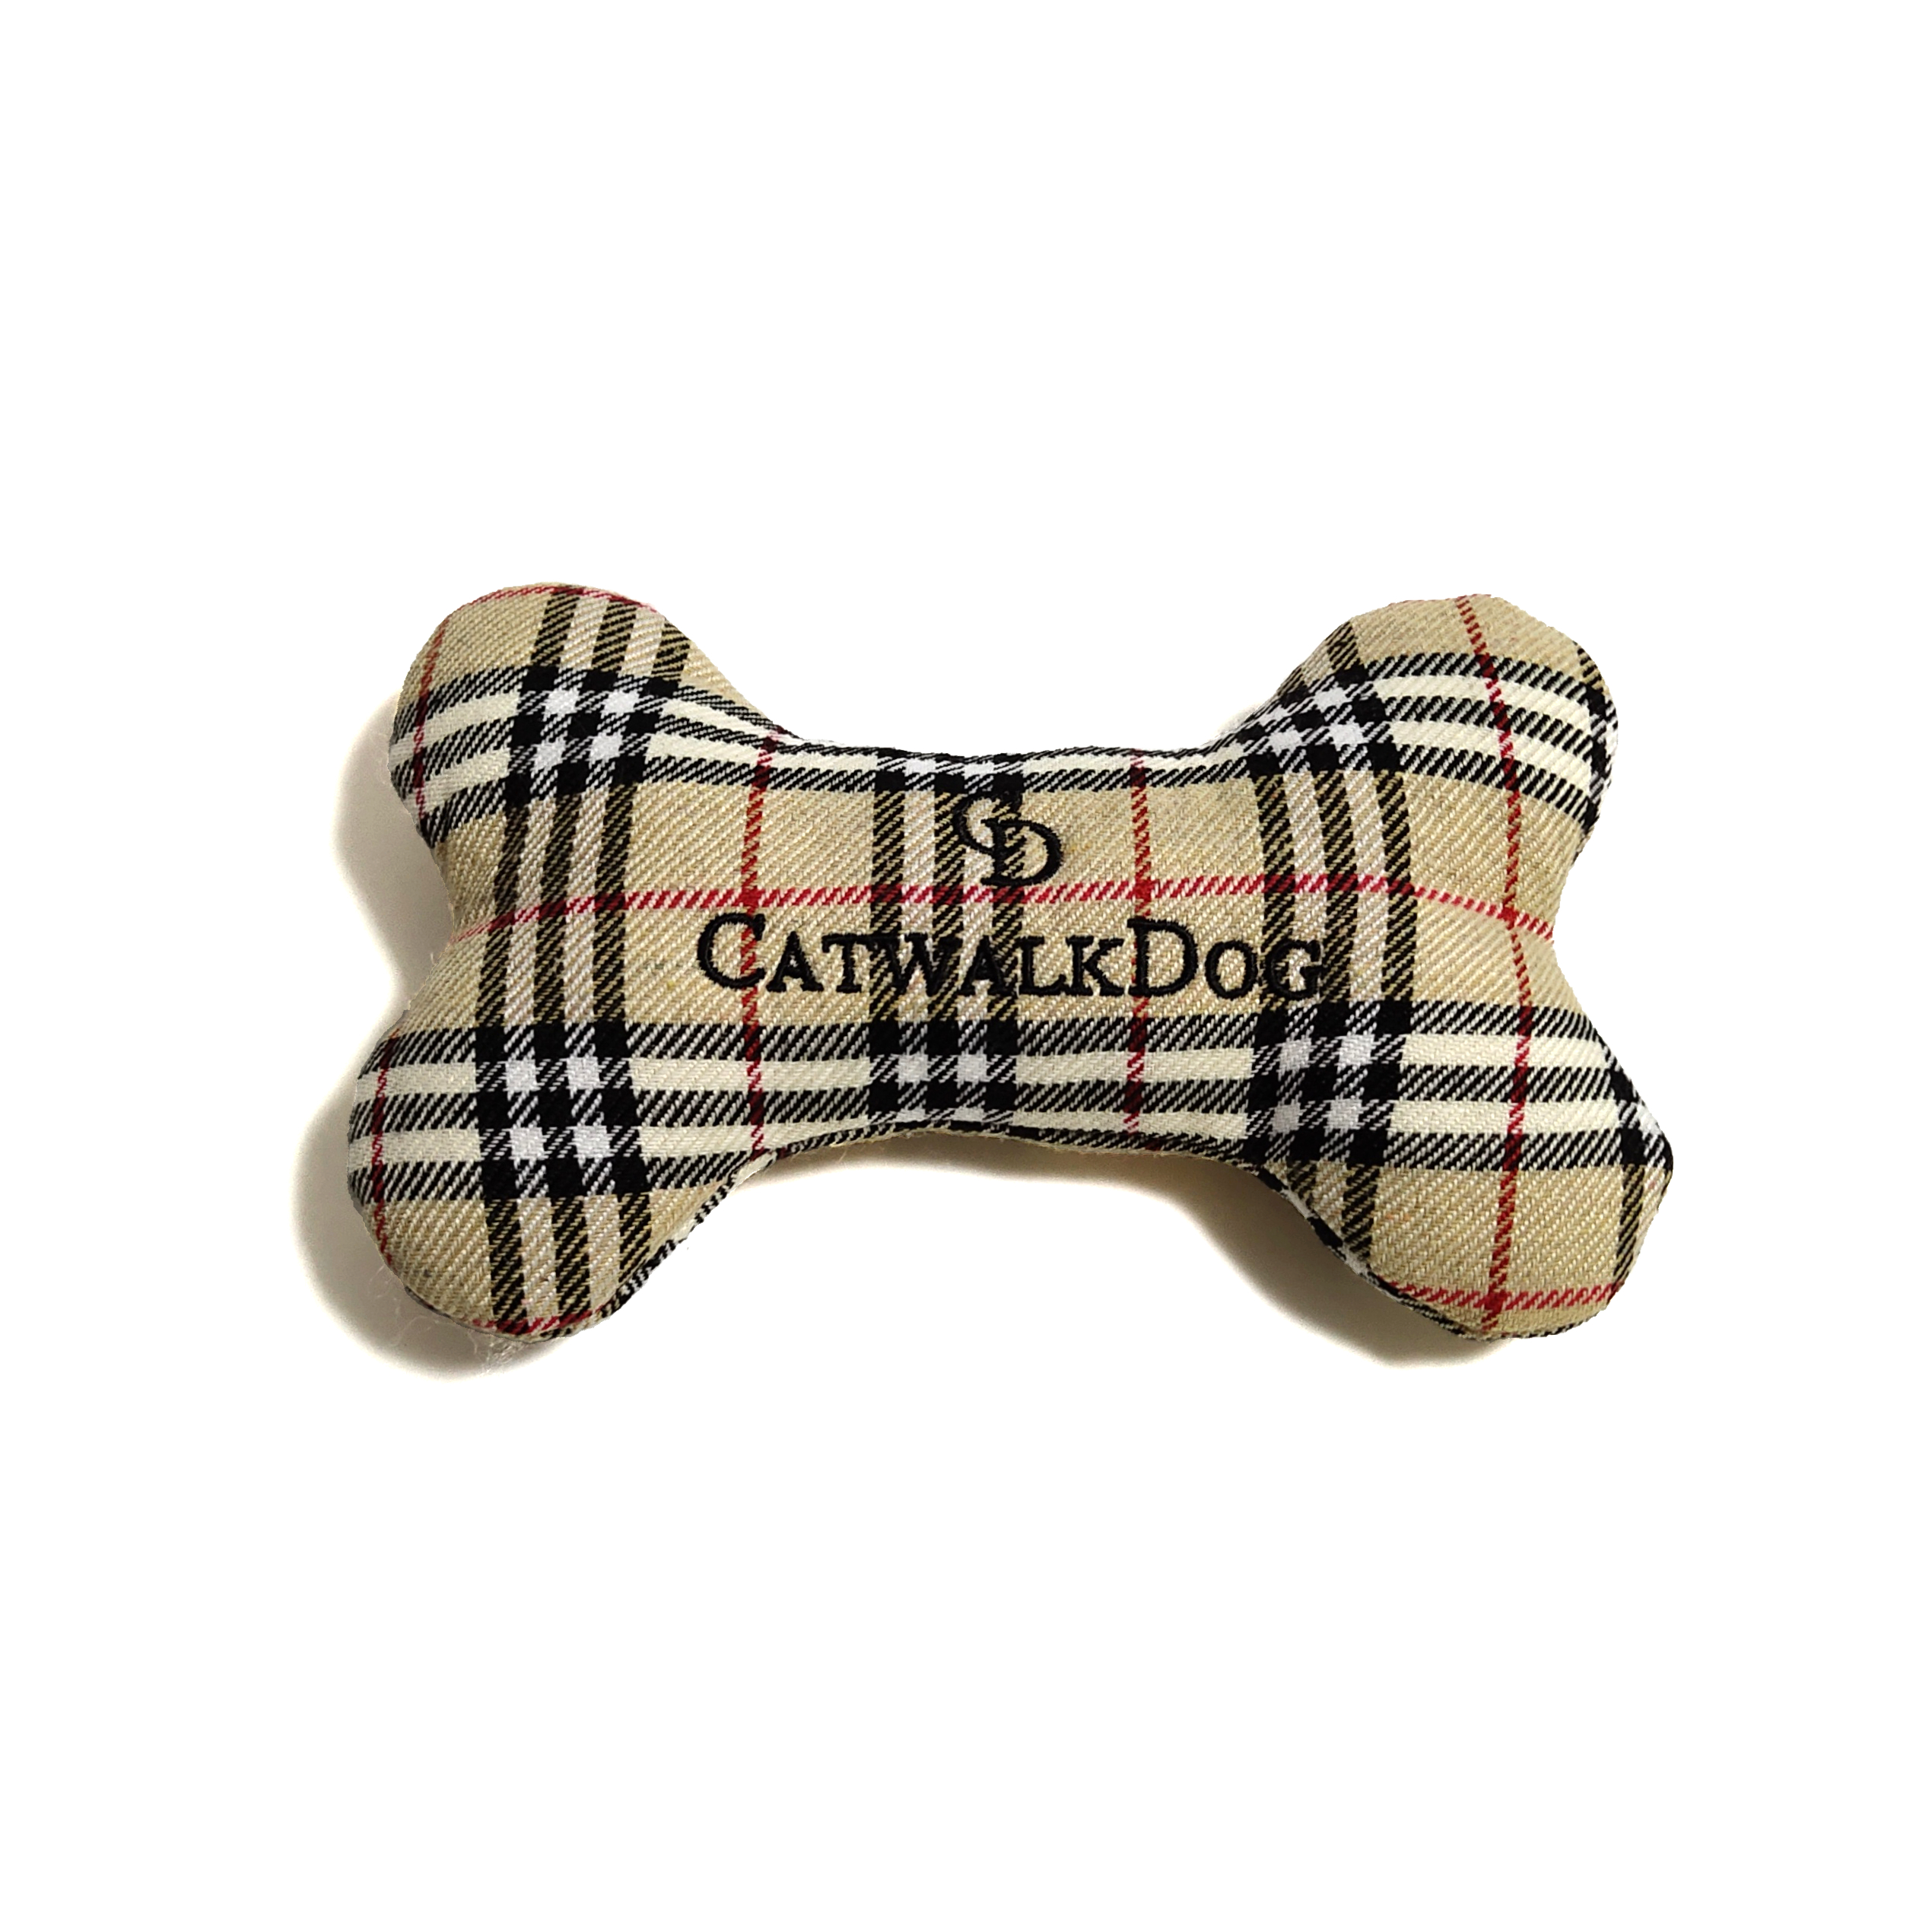 CatwalkDog Furberry Bone Parody Plush Dog Toy